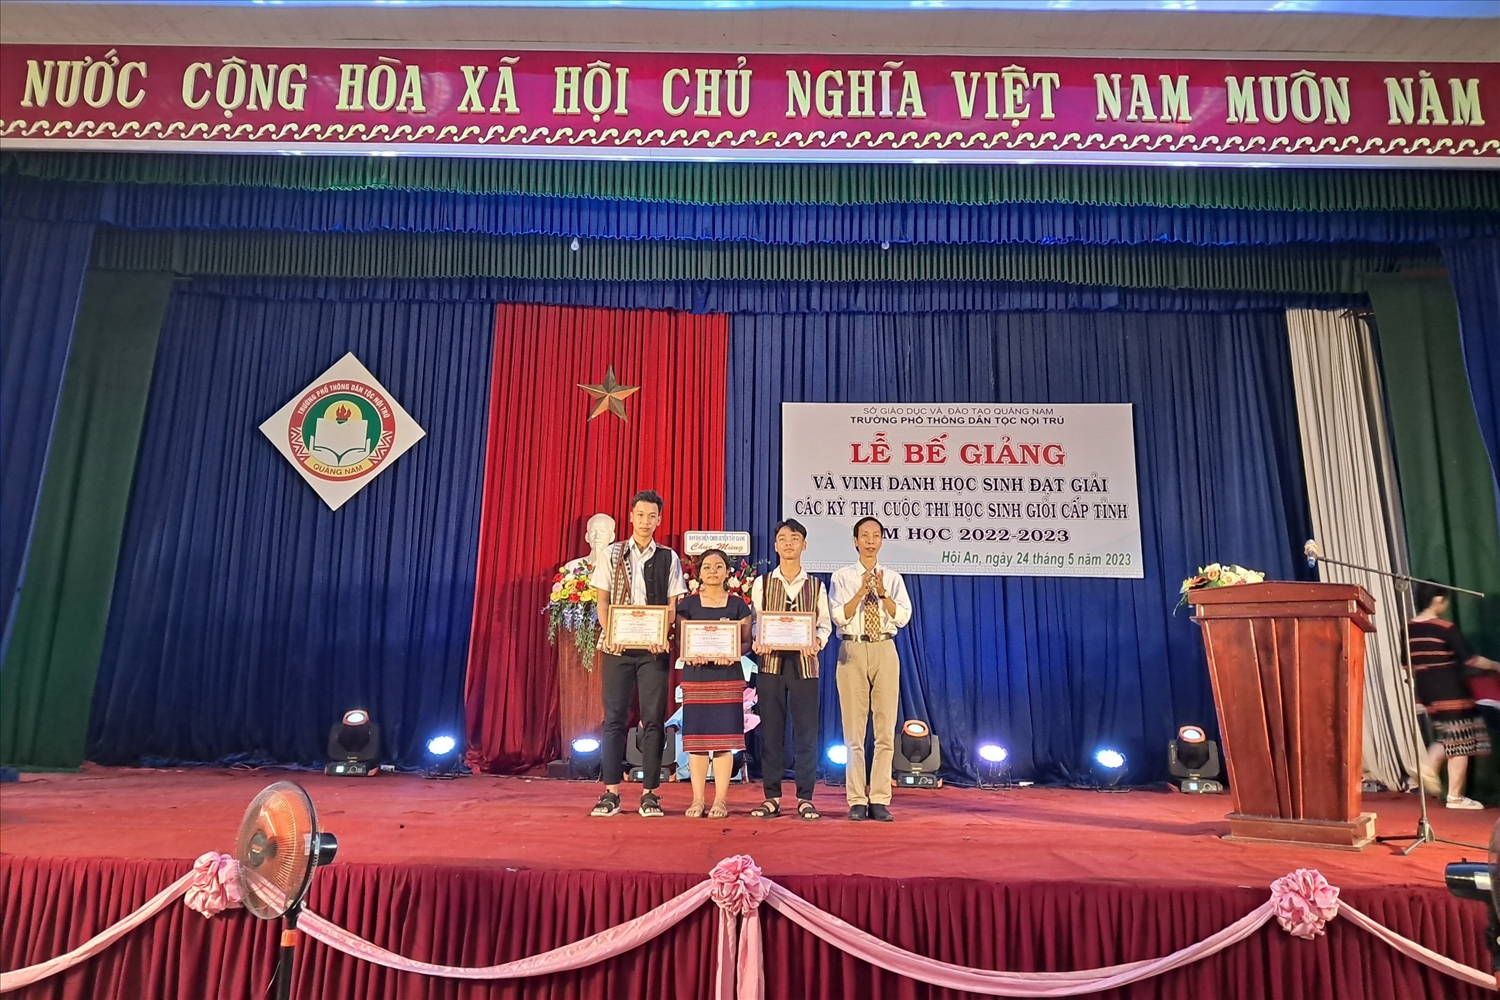 Alăng Thị Siêng được tuyên dương với thành tích đạt giải Nhì môn Ngữ văn trong kỳ thi Học sinh giỏi cấp tỉnh năm học 2022-2023